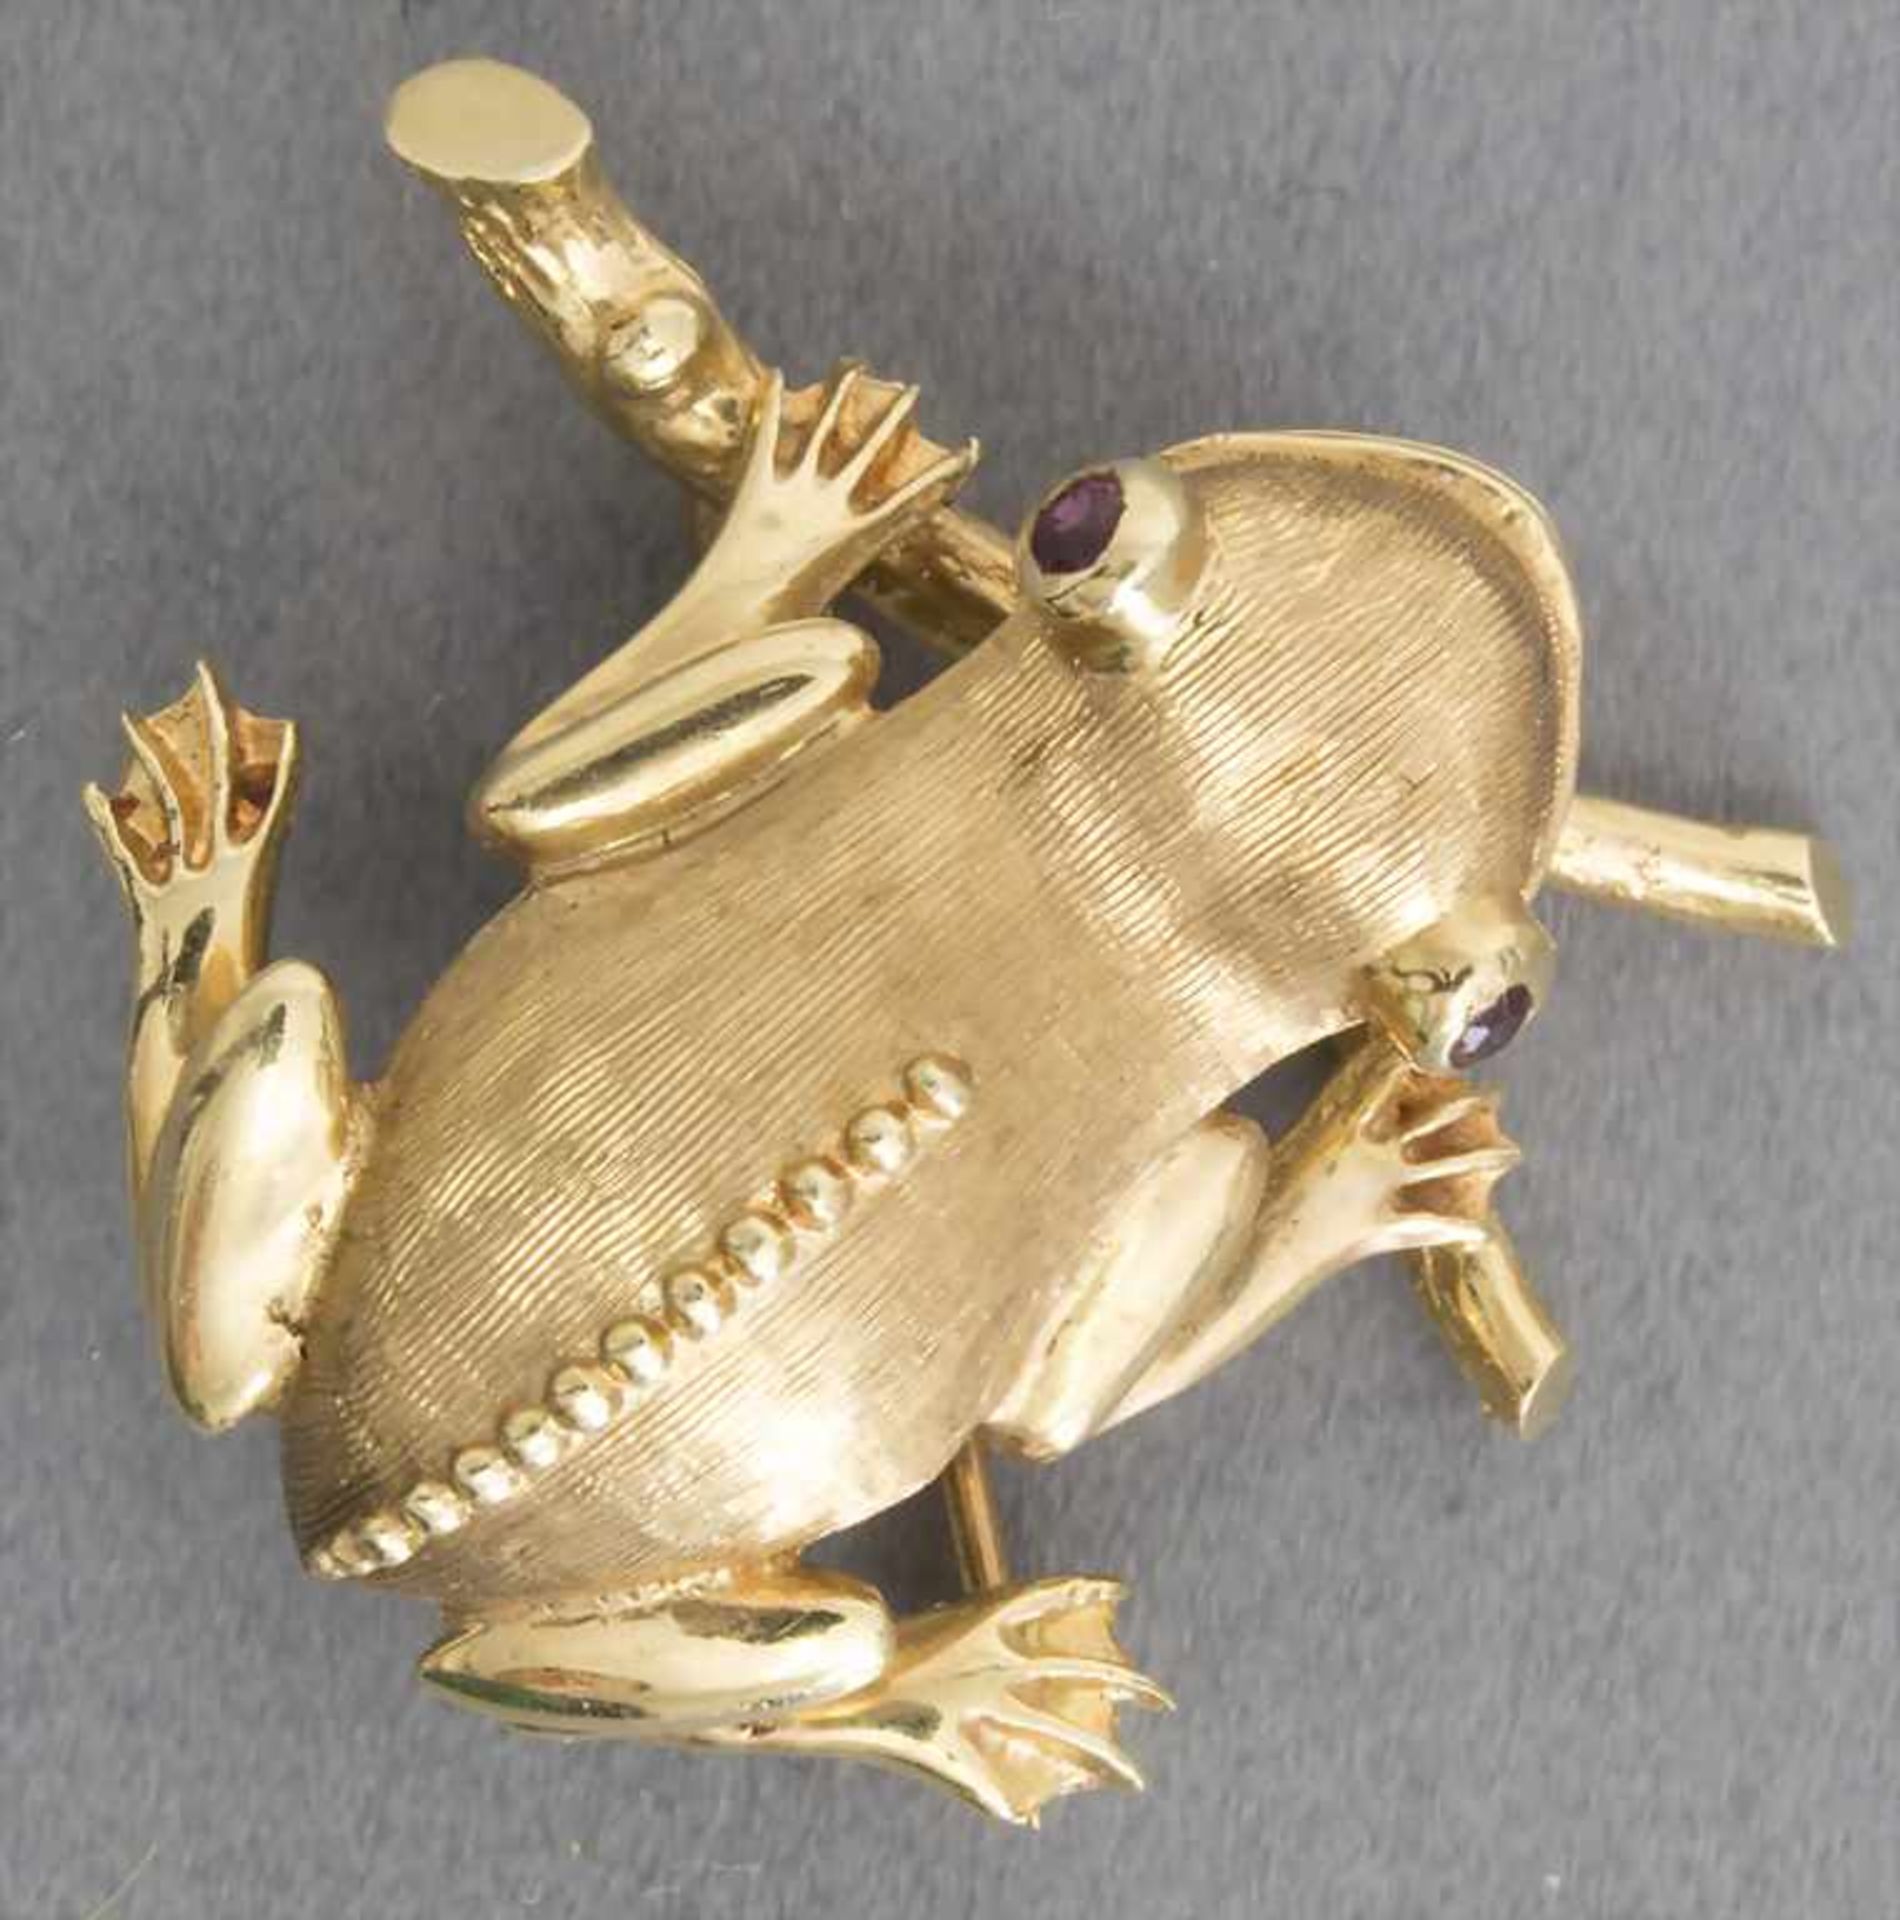 Brosche "Frosch" / A brooch " A frog"Material: Gelbgold 585/000 14 Kt gepunzt, Rubine,Länge: 27 mm,